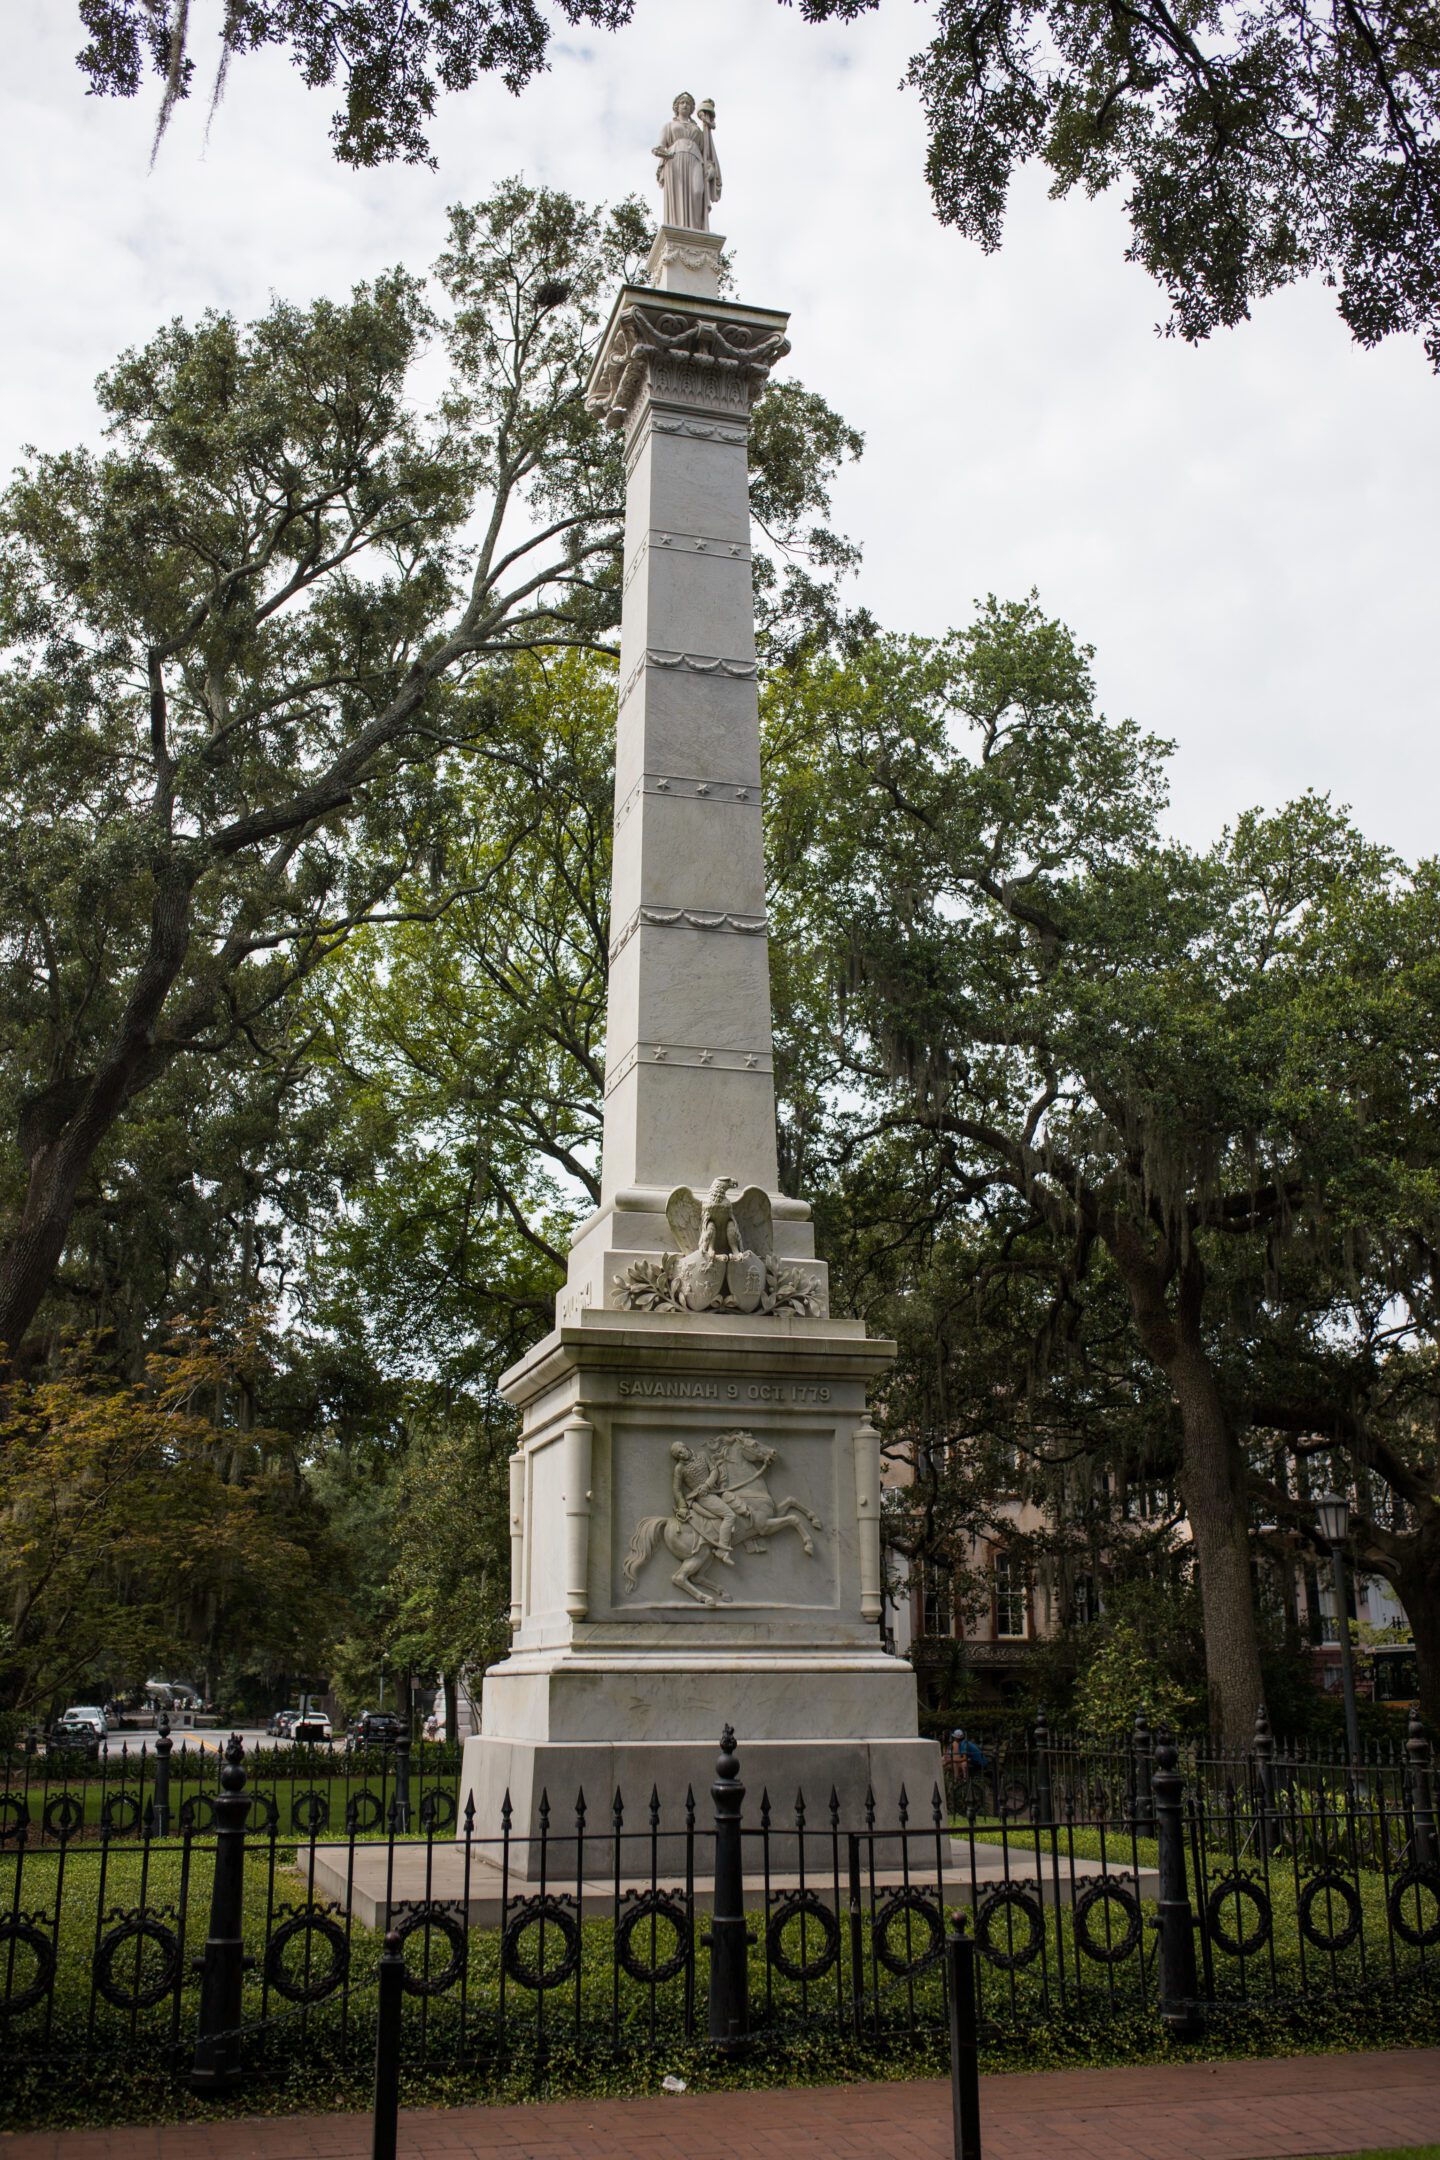 A historic monument in Savannah Georgia, day trip to savannah georgia